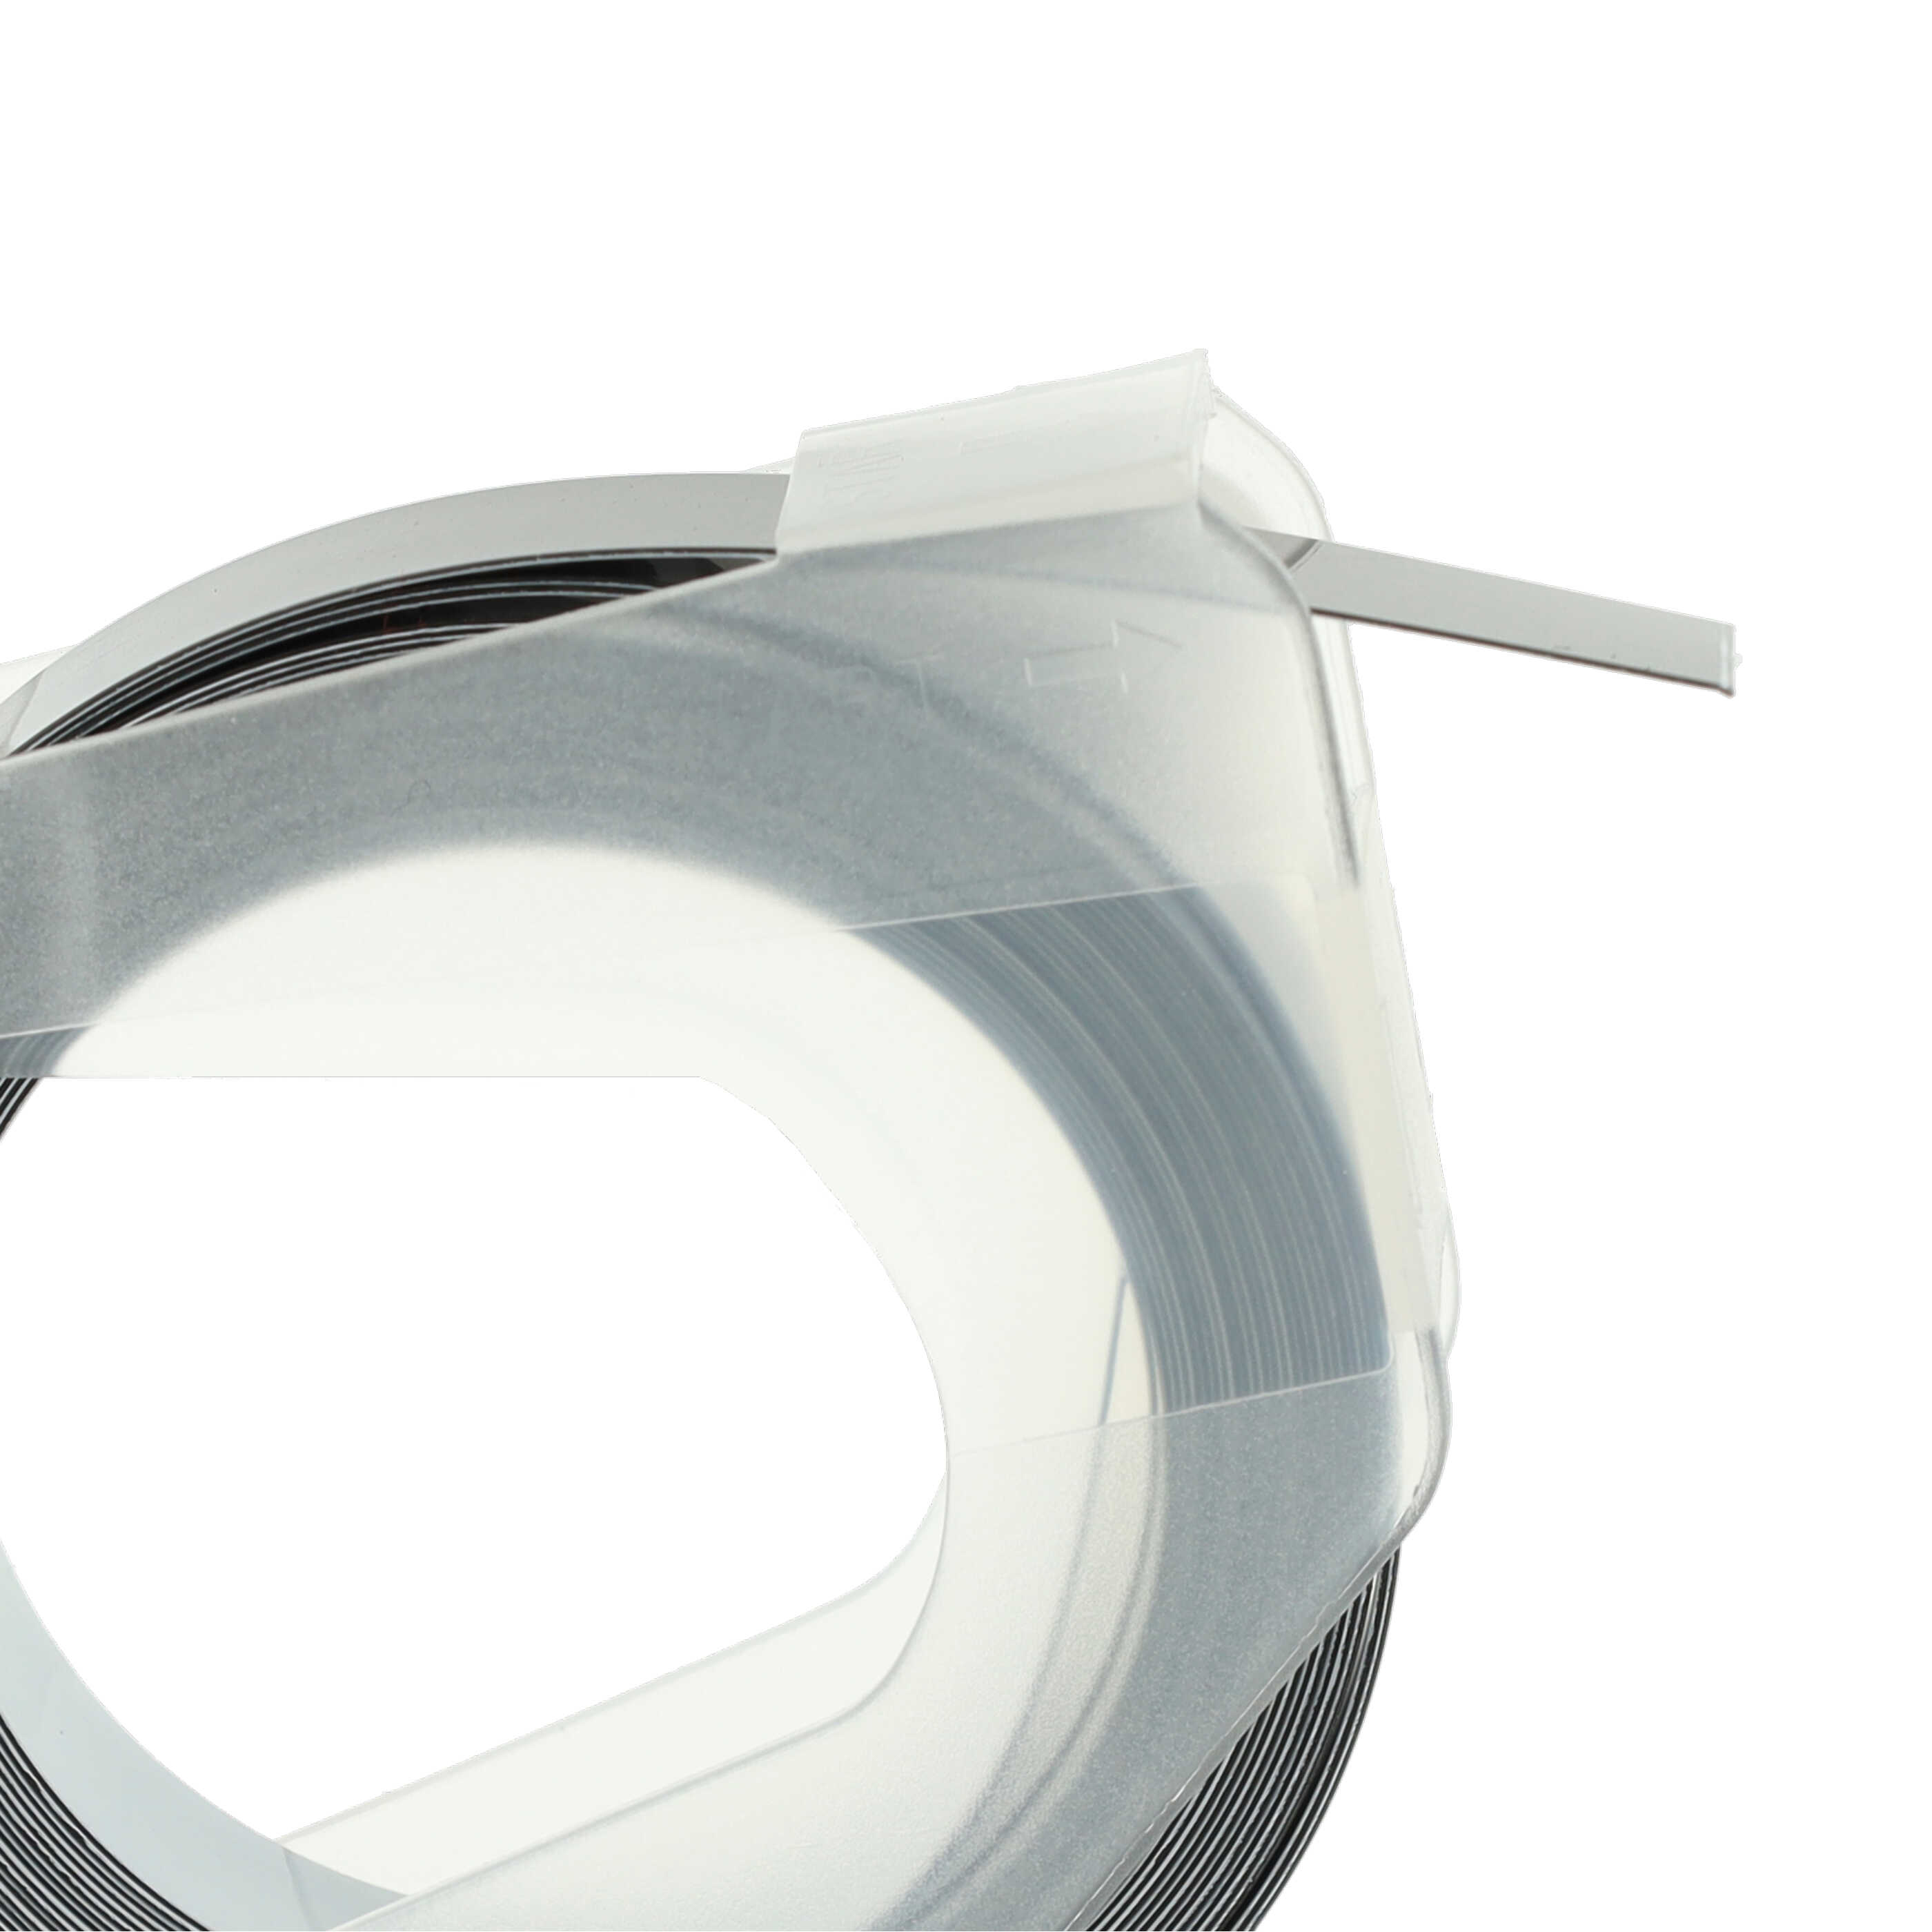 10x Casete cinta relieve 3D Casete cinta escritura reemplaza Dymo 520109, 0898130 Blanco su Negro